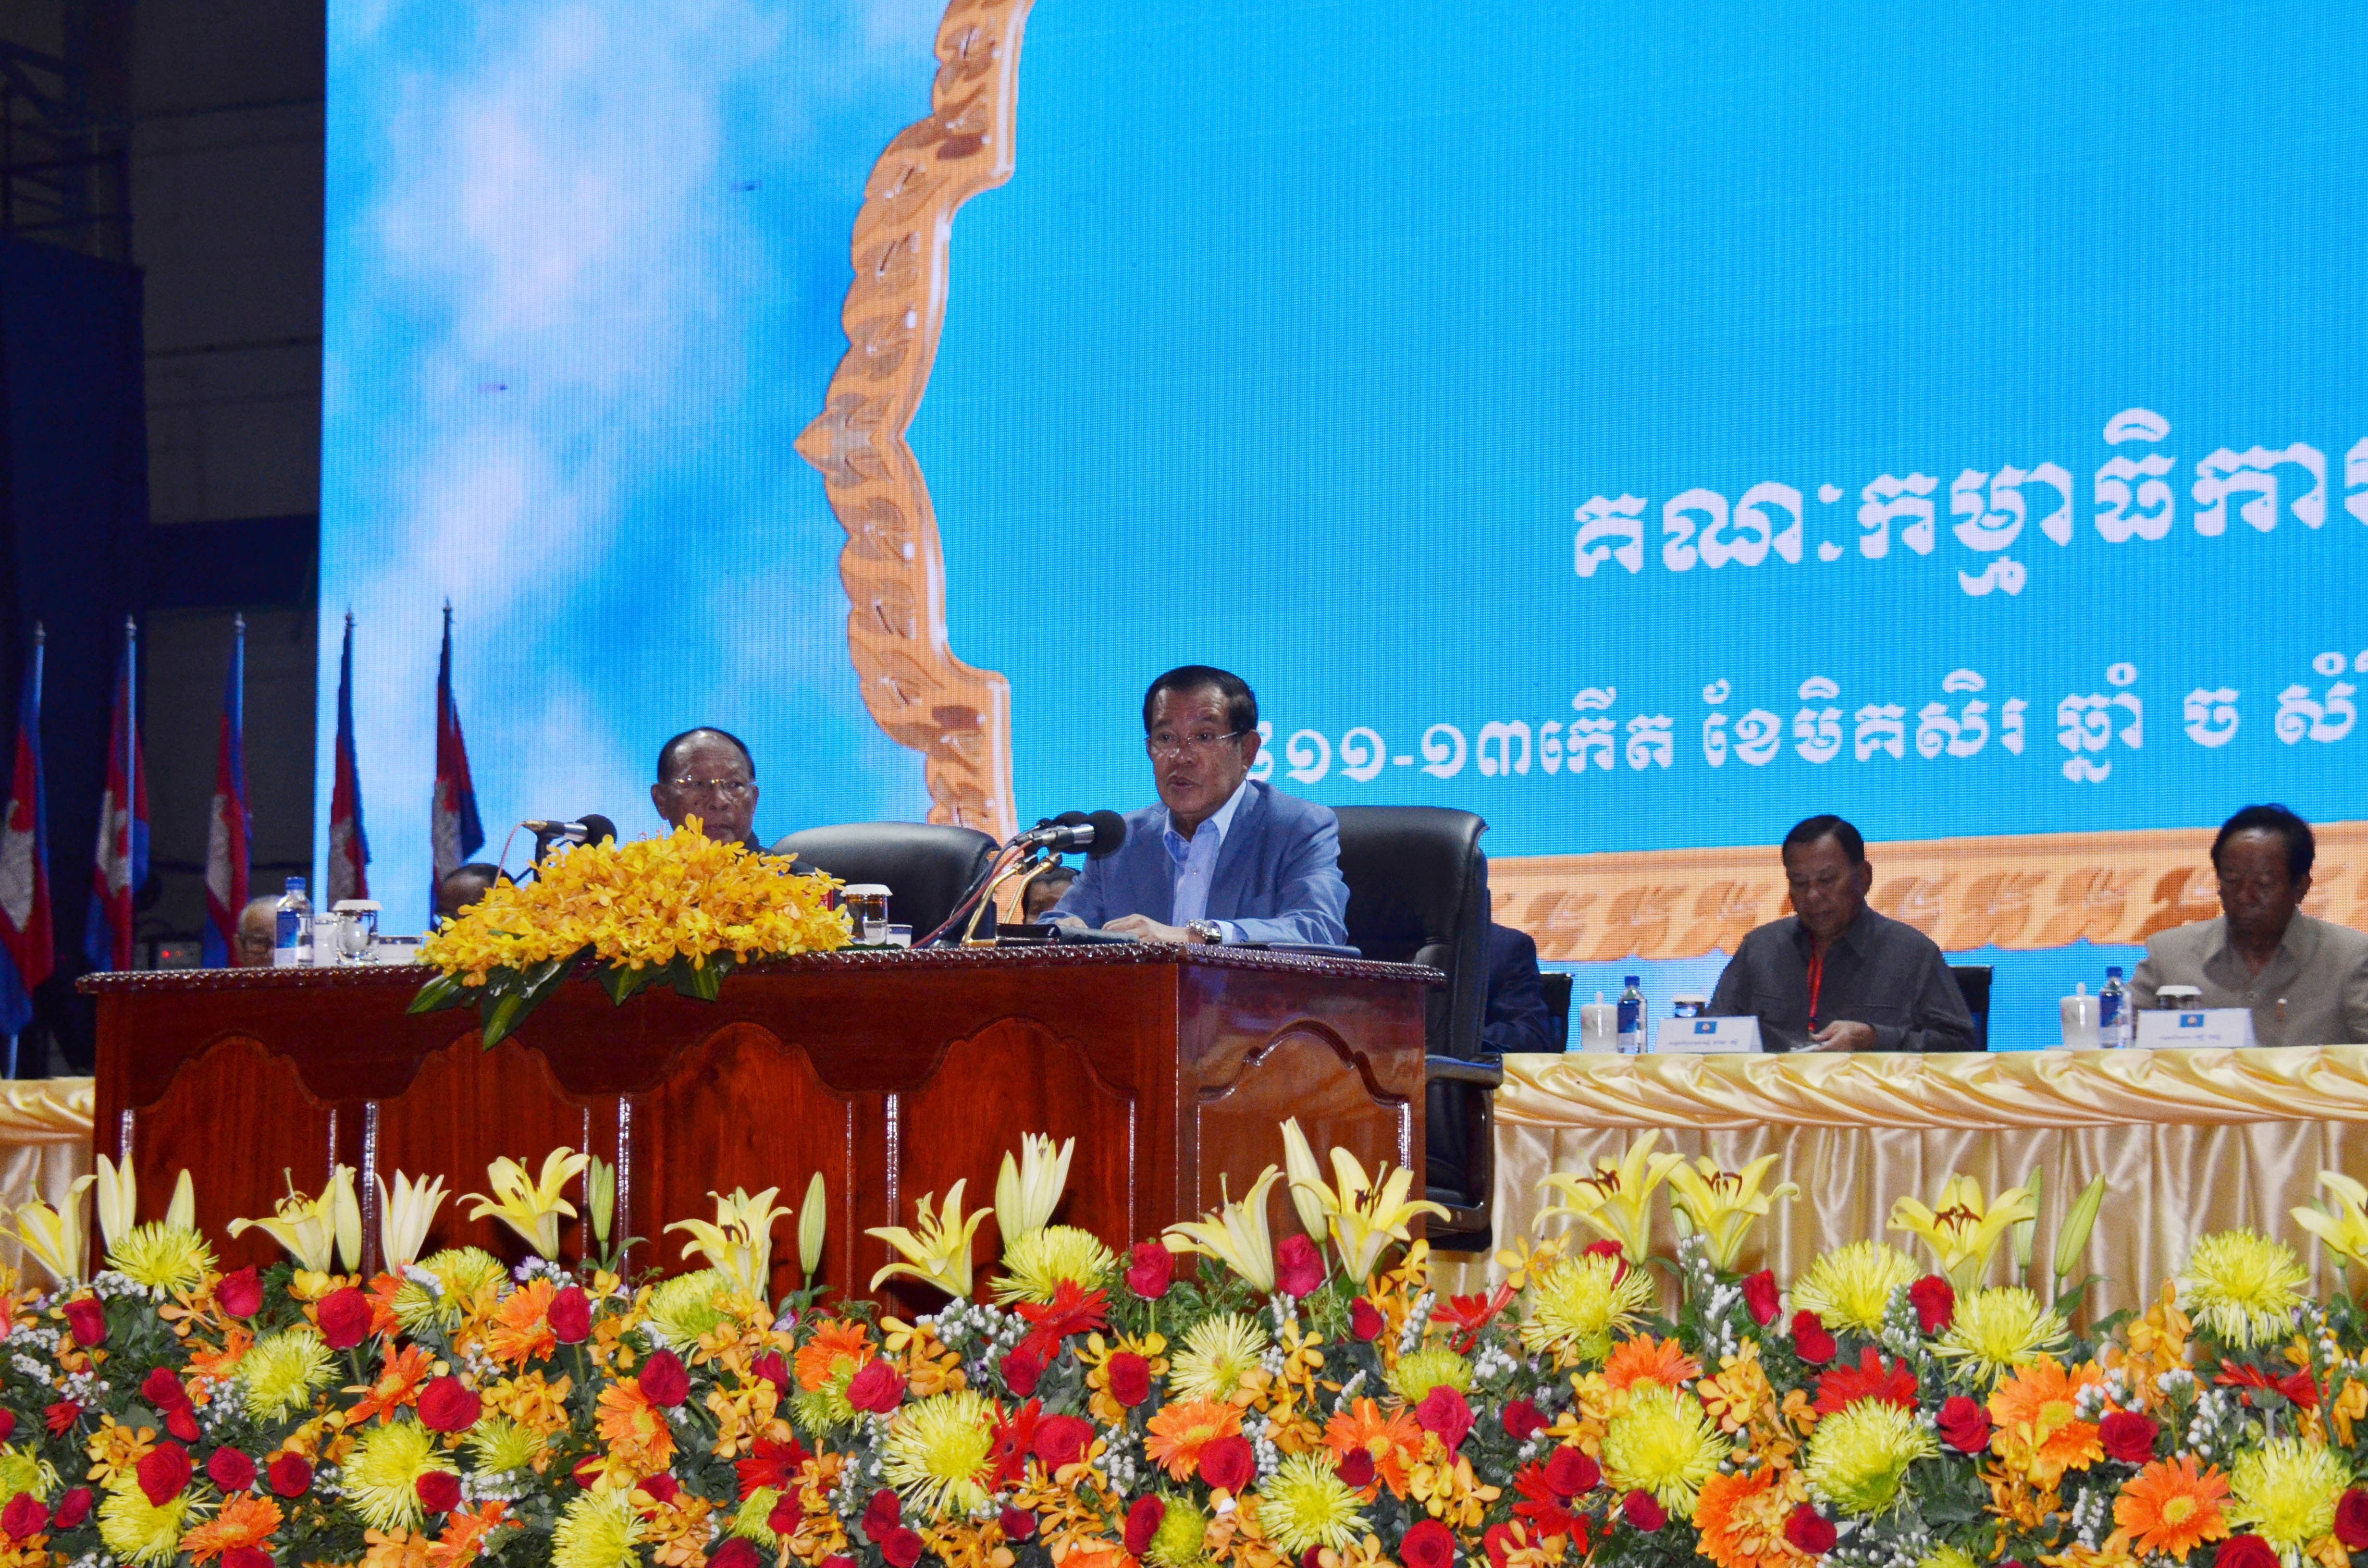 柬埔寨人民党名誉主席韩桑林在埔寨人民党（CPP）第41次中央委员会大会上发表讲话。图自越通社